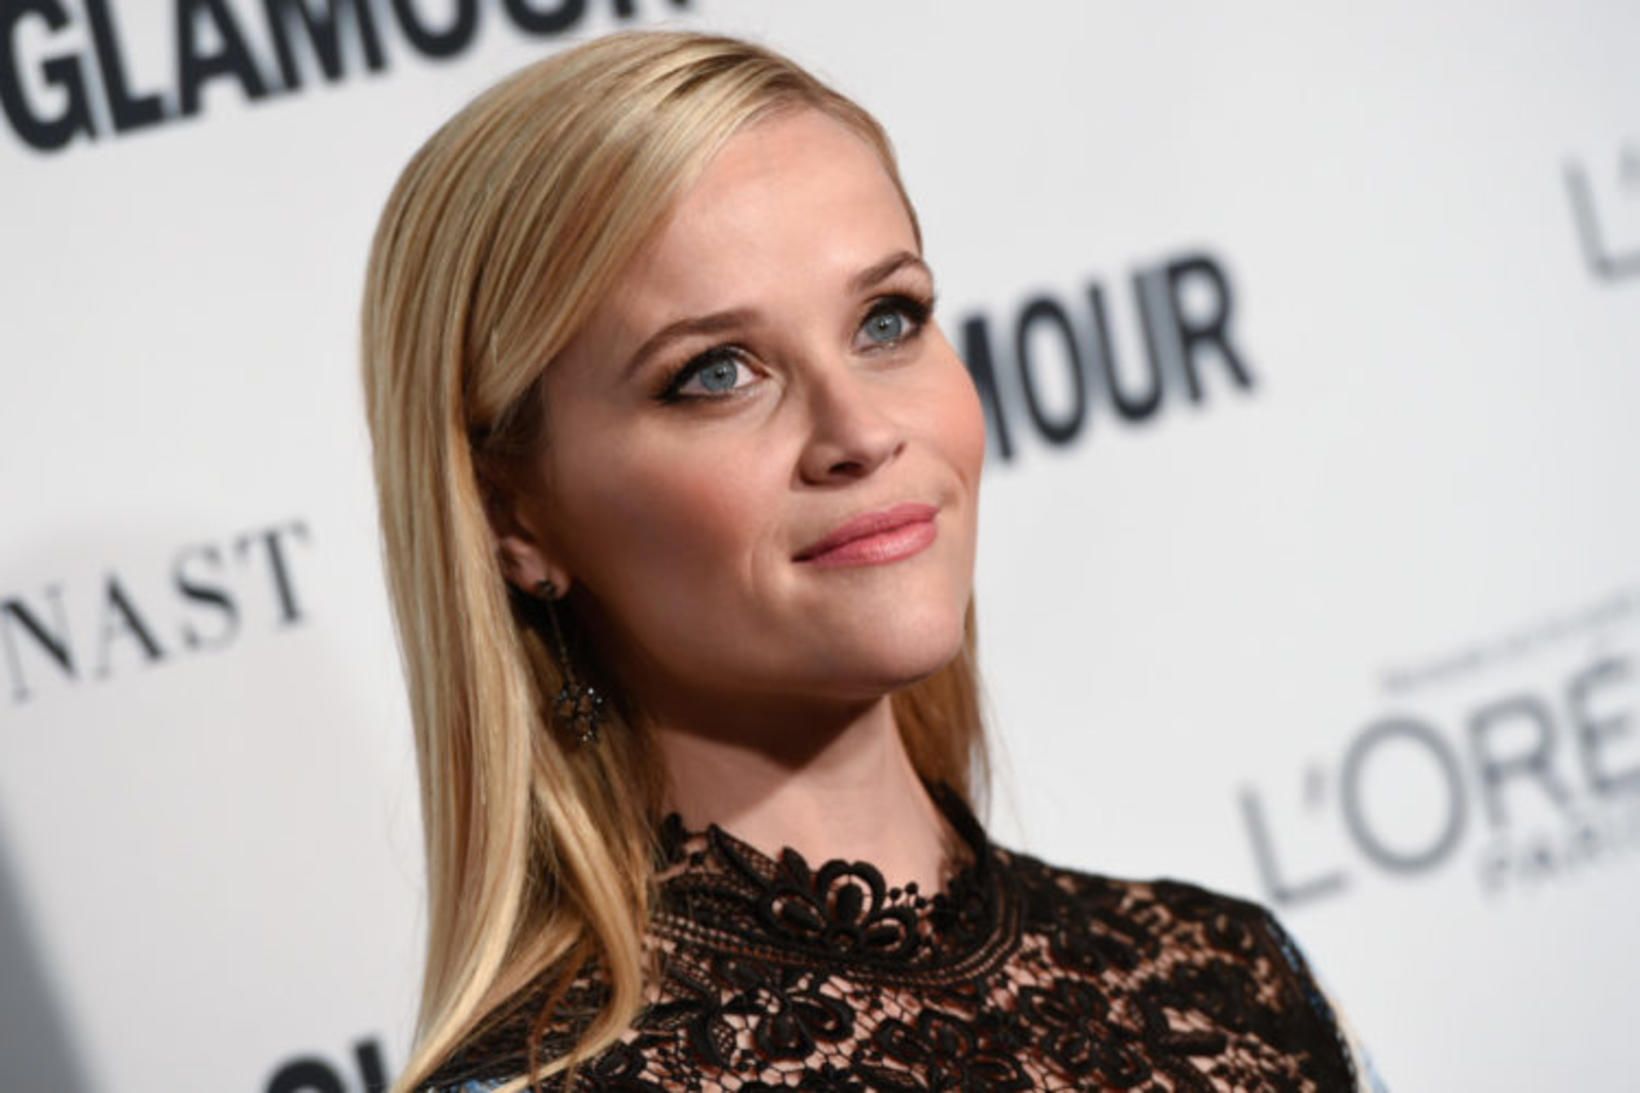 Hollywood-leikkonan Reese Witherspoon sýndi víst góðan leik í þáttunum Little …